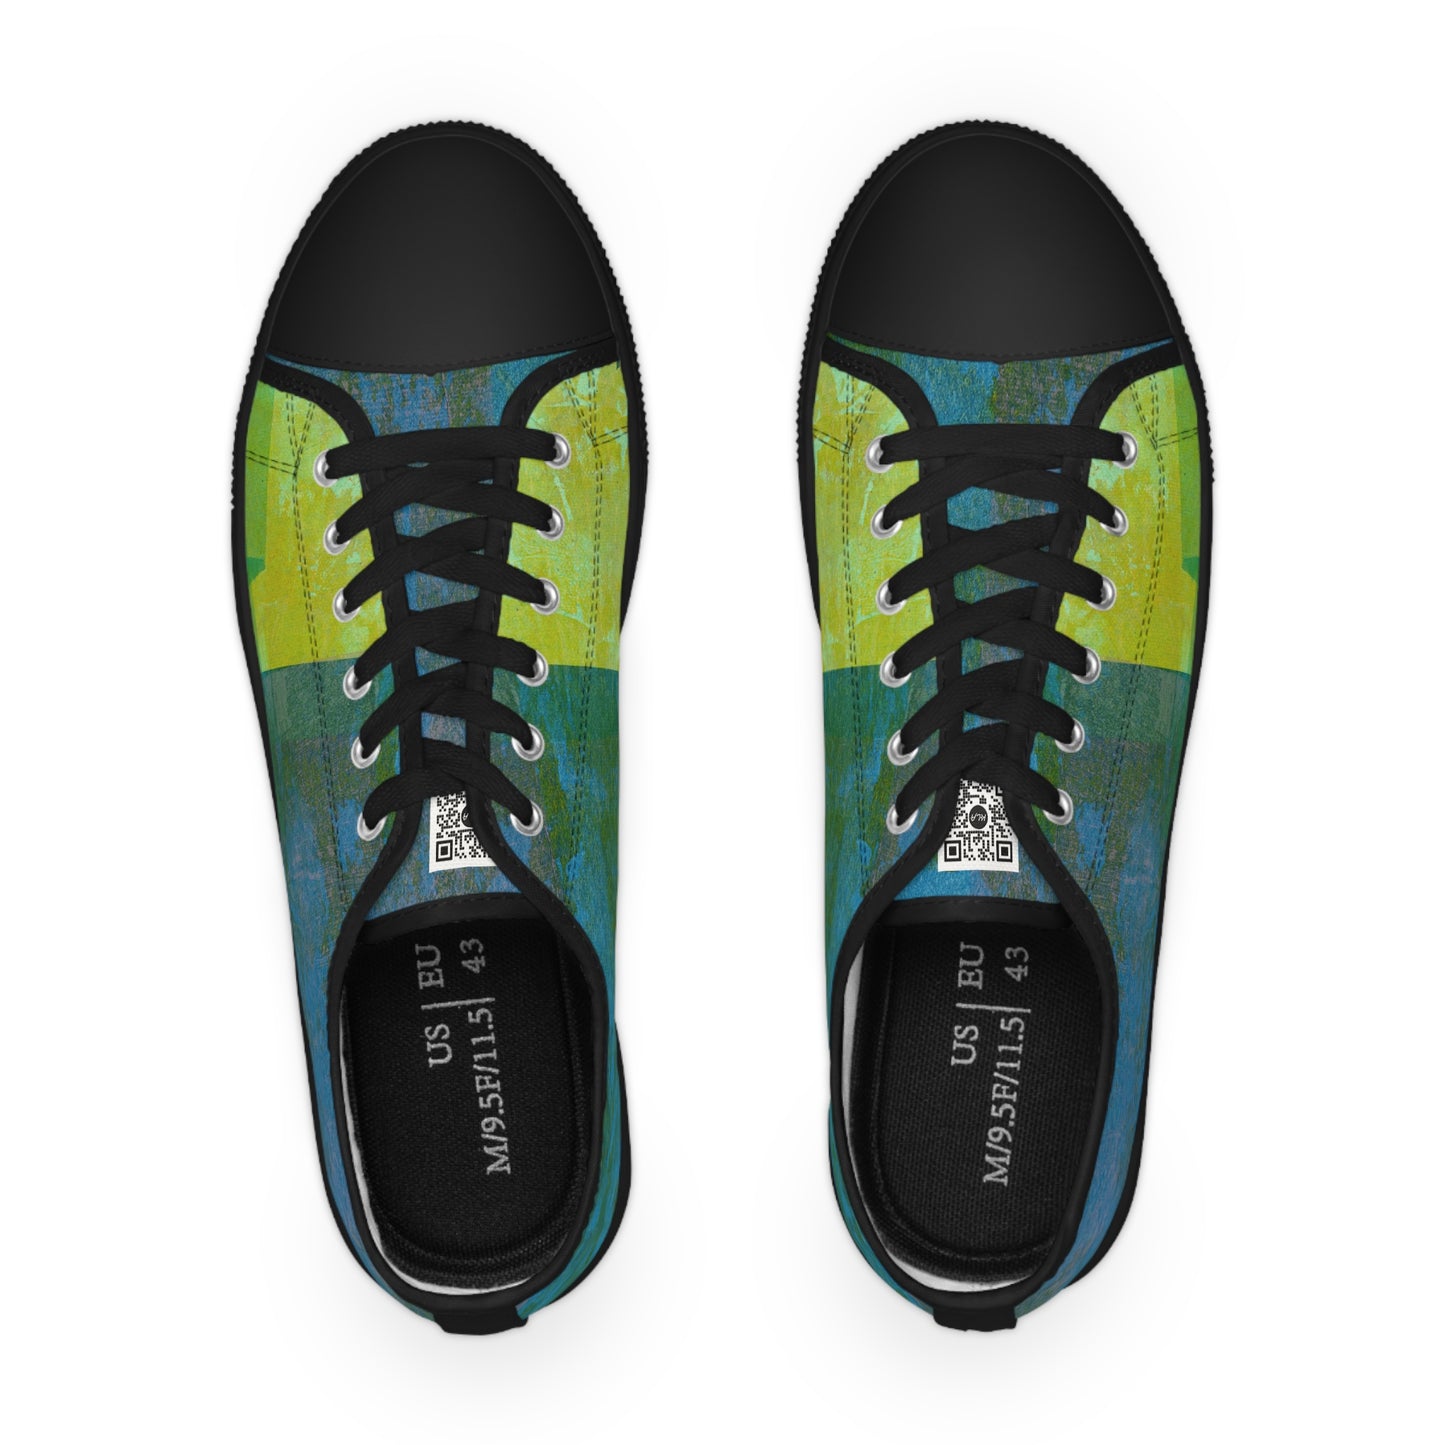 Men's Low Top Sneakers - 02859 US 14 Black sole